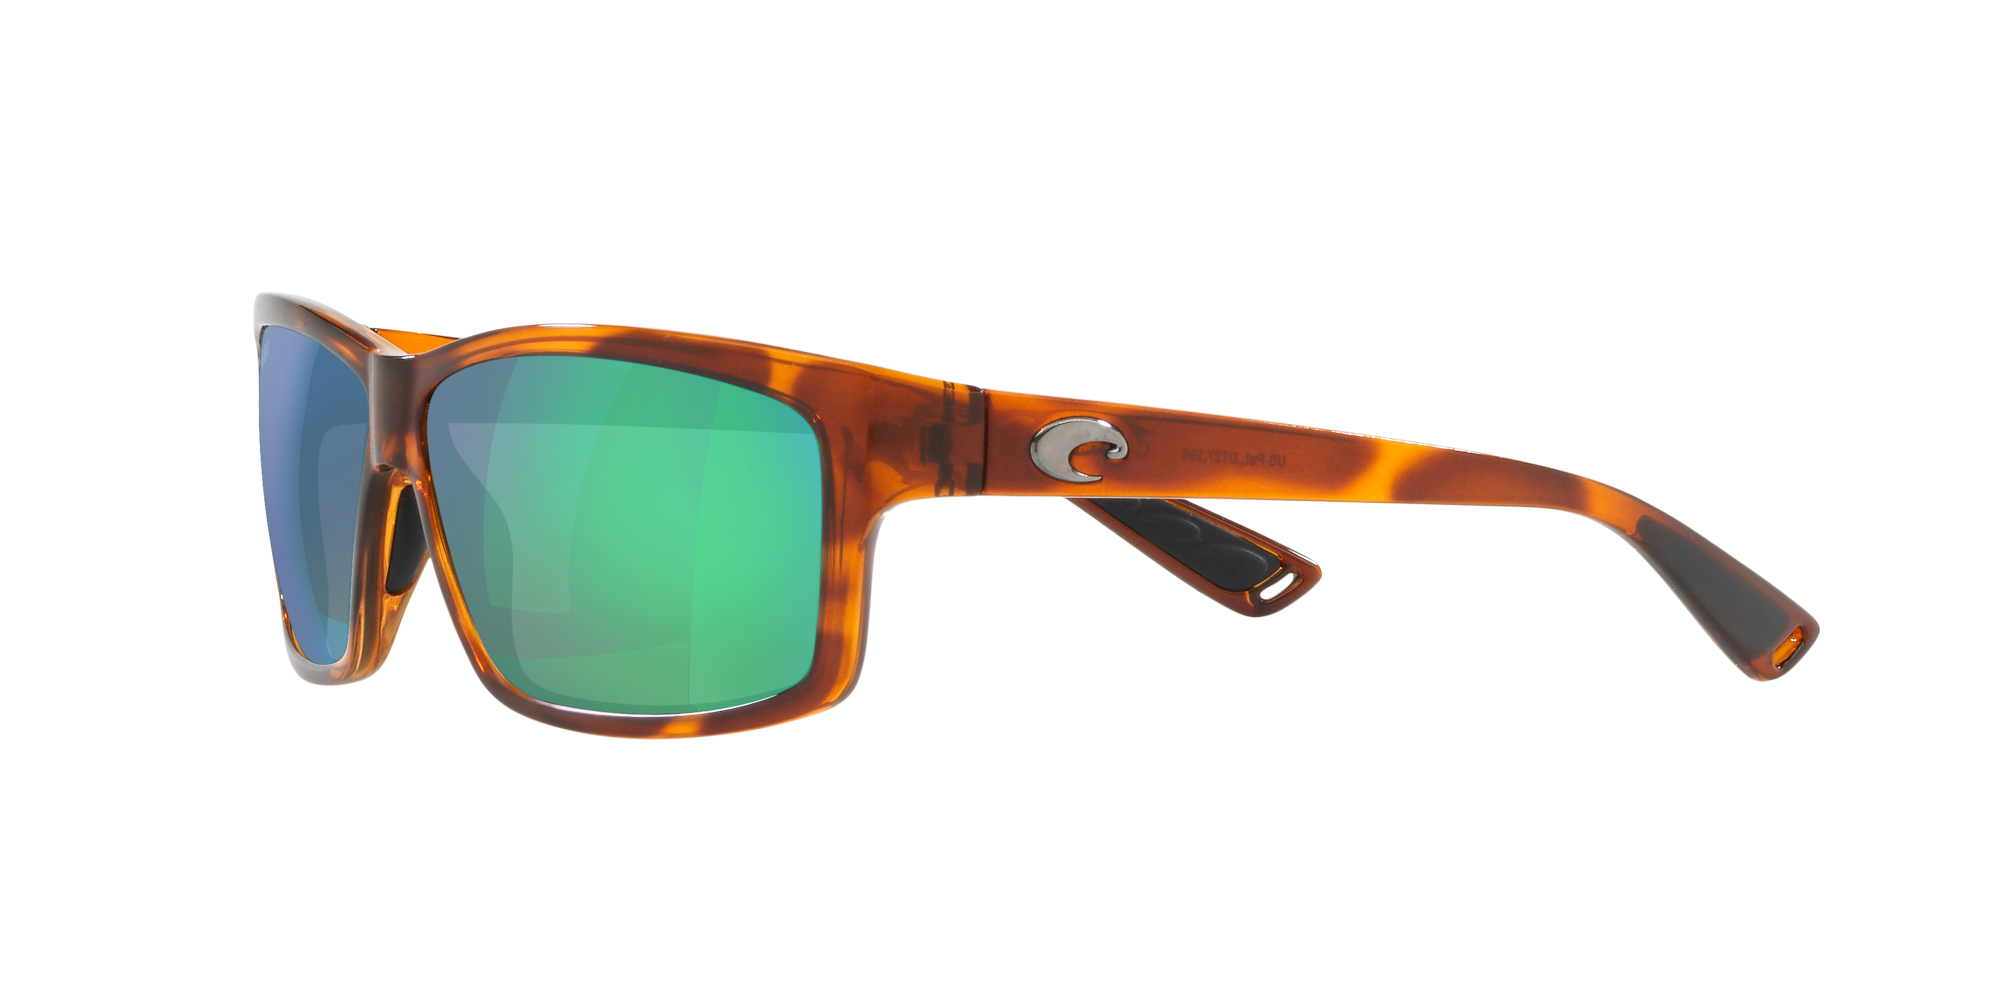 New Costa Del Mar Tippet Polarized Sunglasses 580G Tortoise/Silver Mirror Glass 